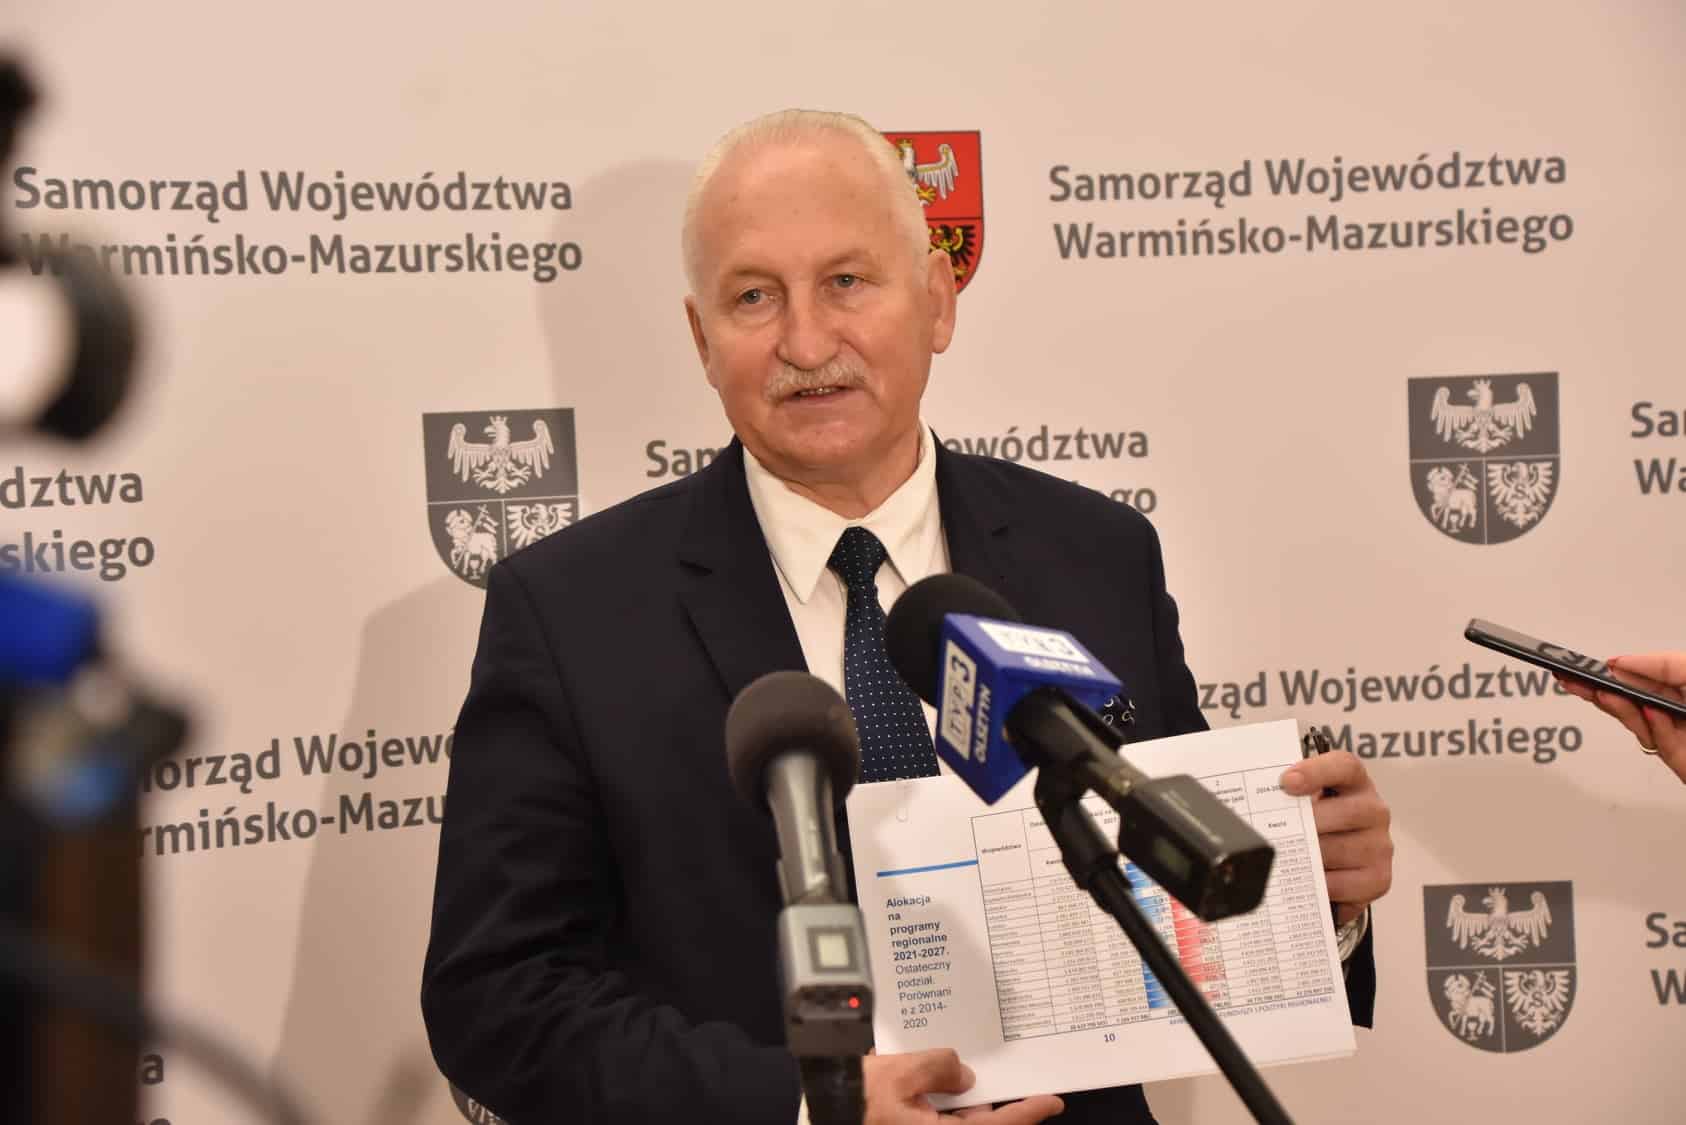 Samorząd województwa warmińsko-mazurskiego: Z nowego RPO inwestycje w Szymanach i port w Elblągu finanse Wiadomości